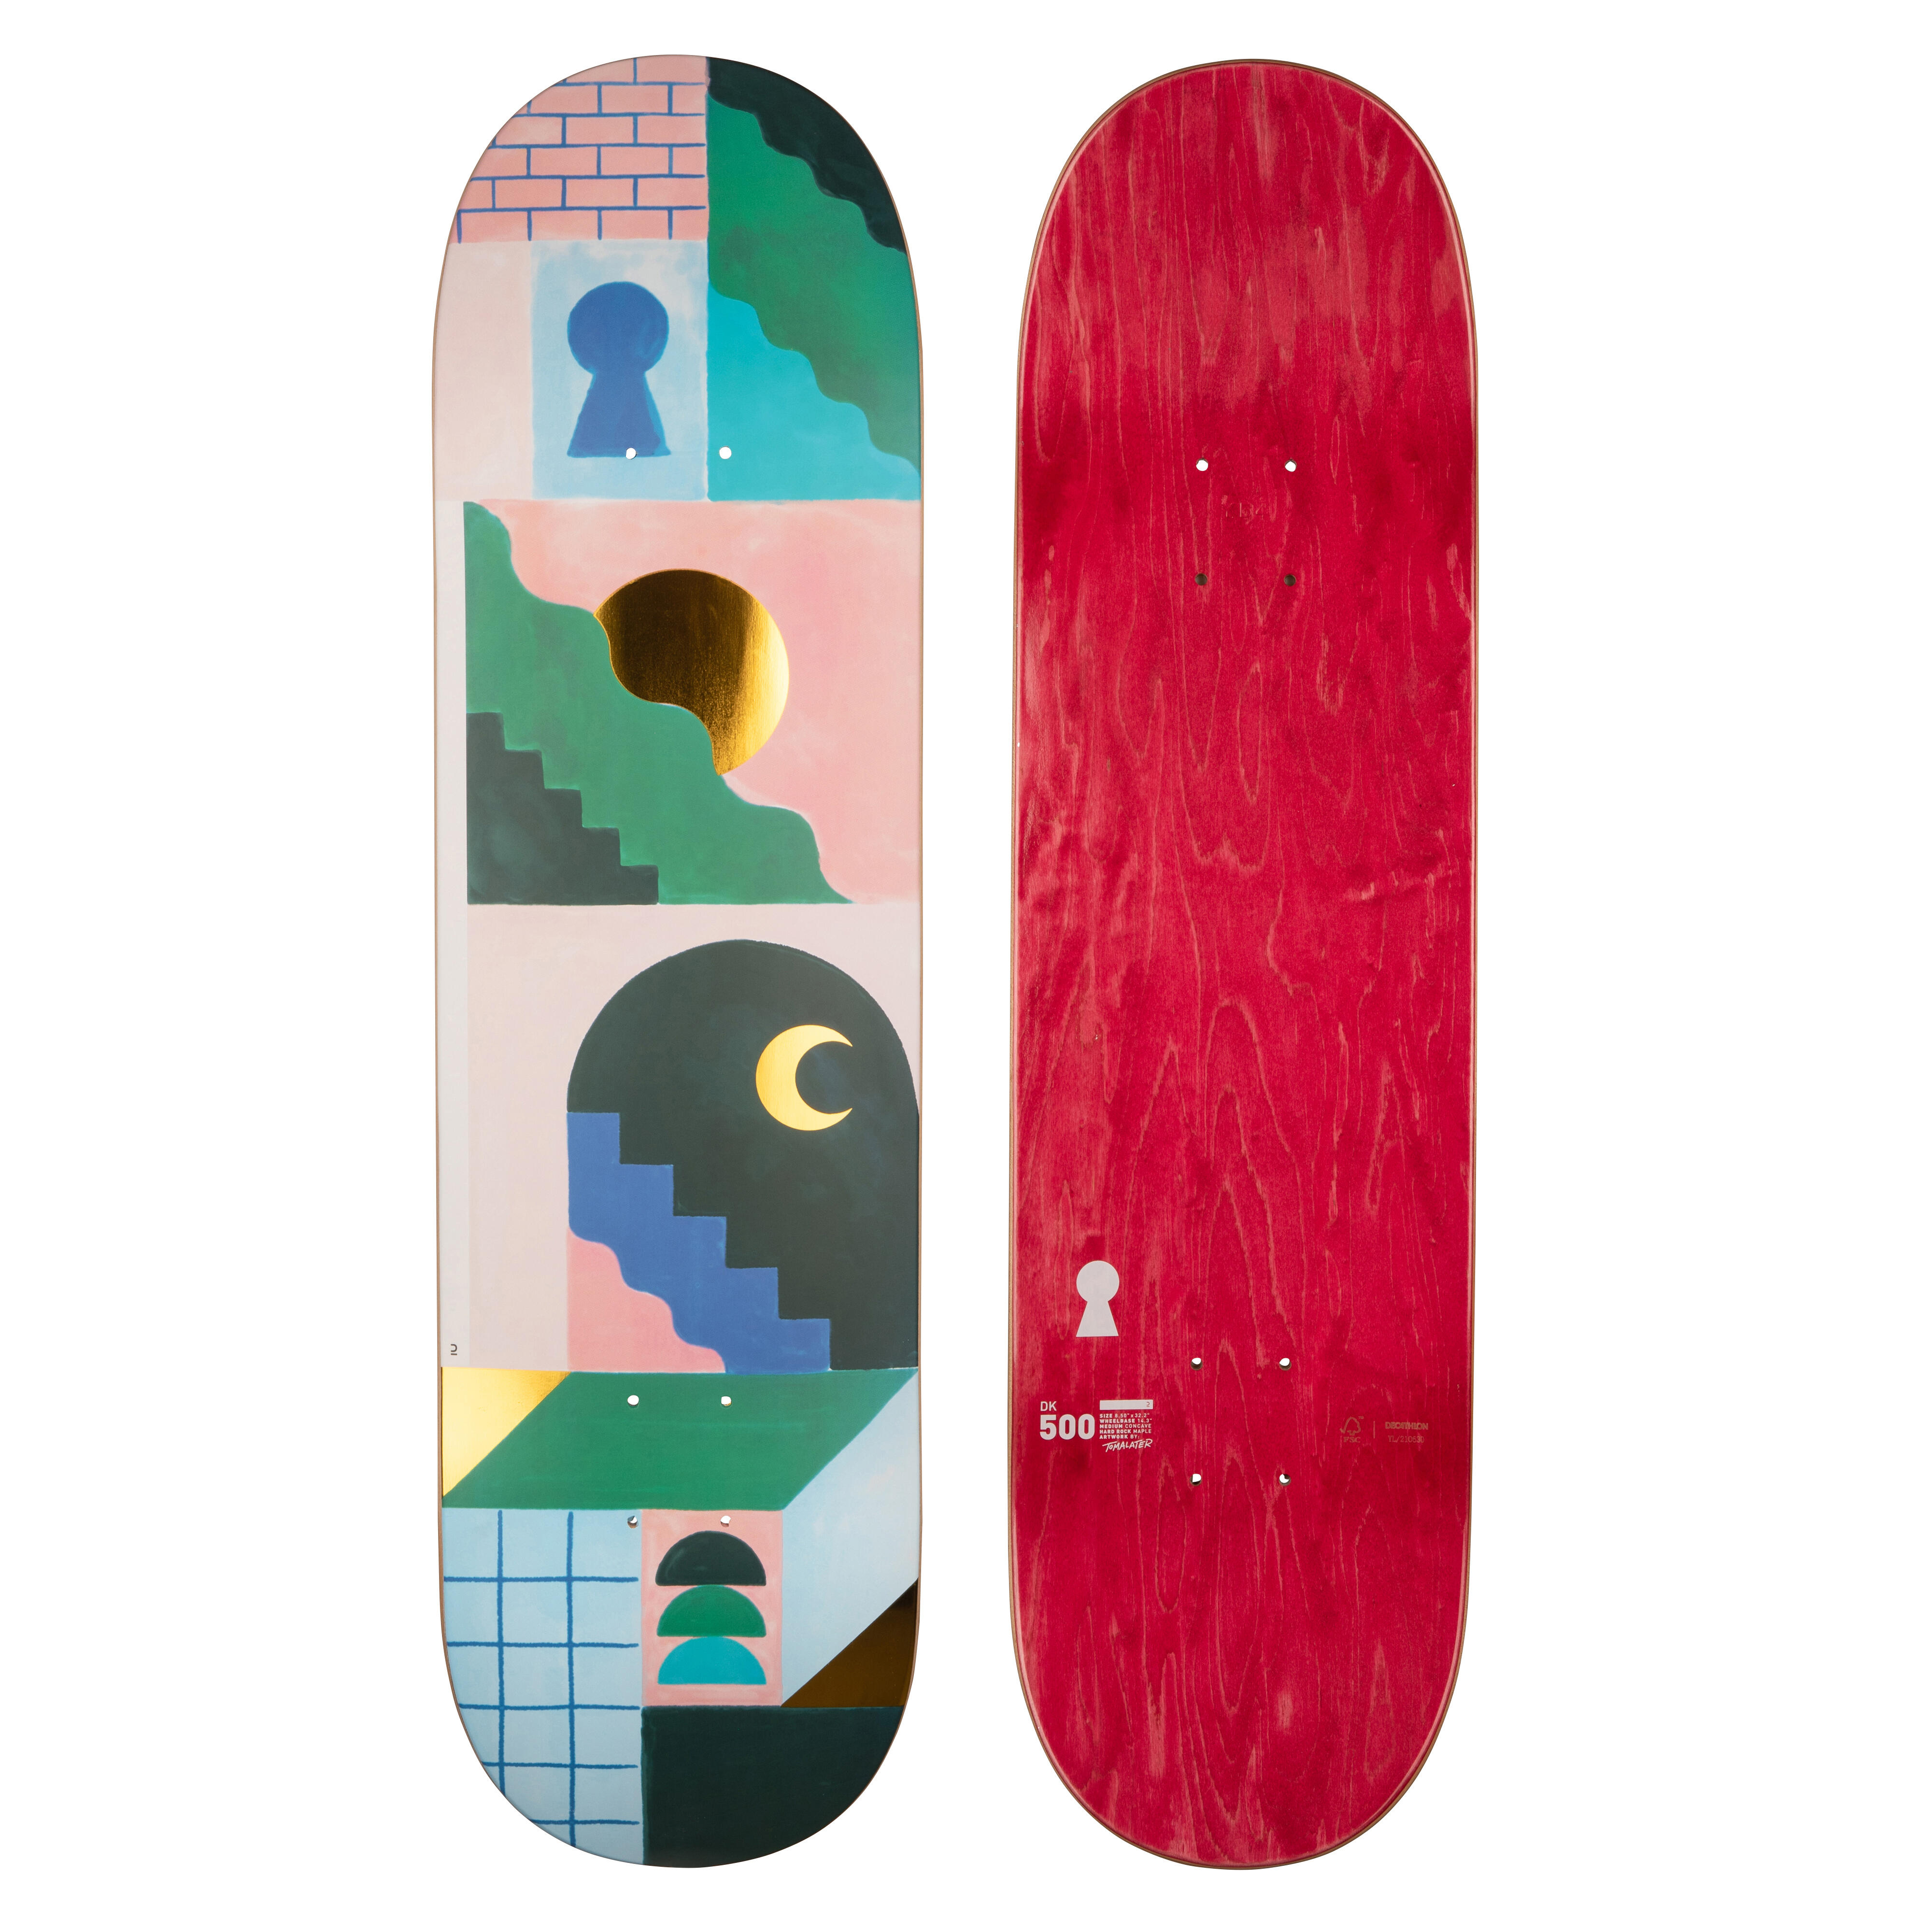 Placă skateboard DK500 Mărimea 8,5"Grafică de @TOMALATER